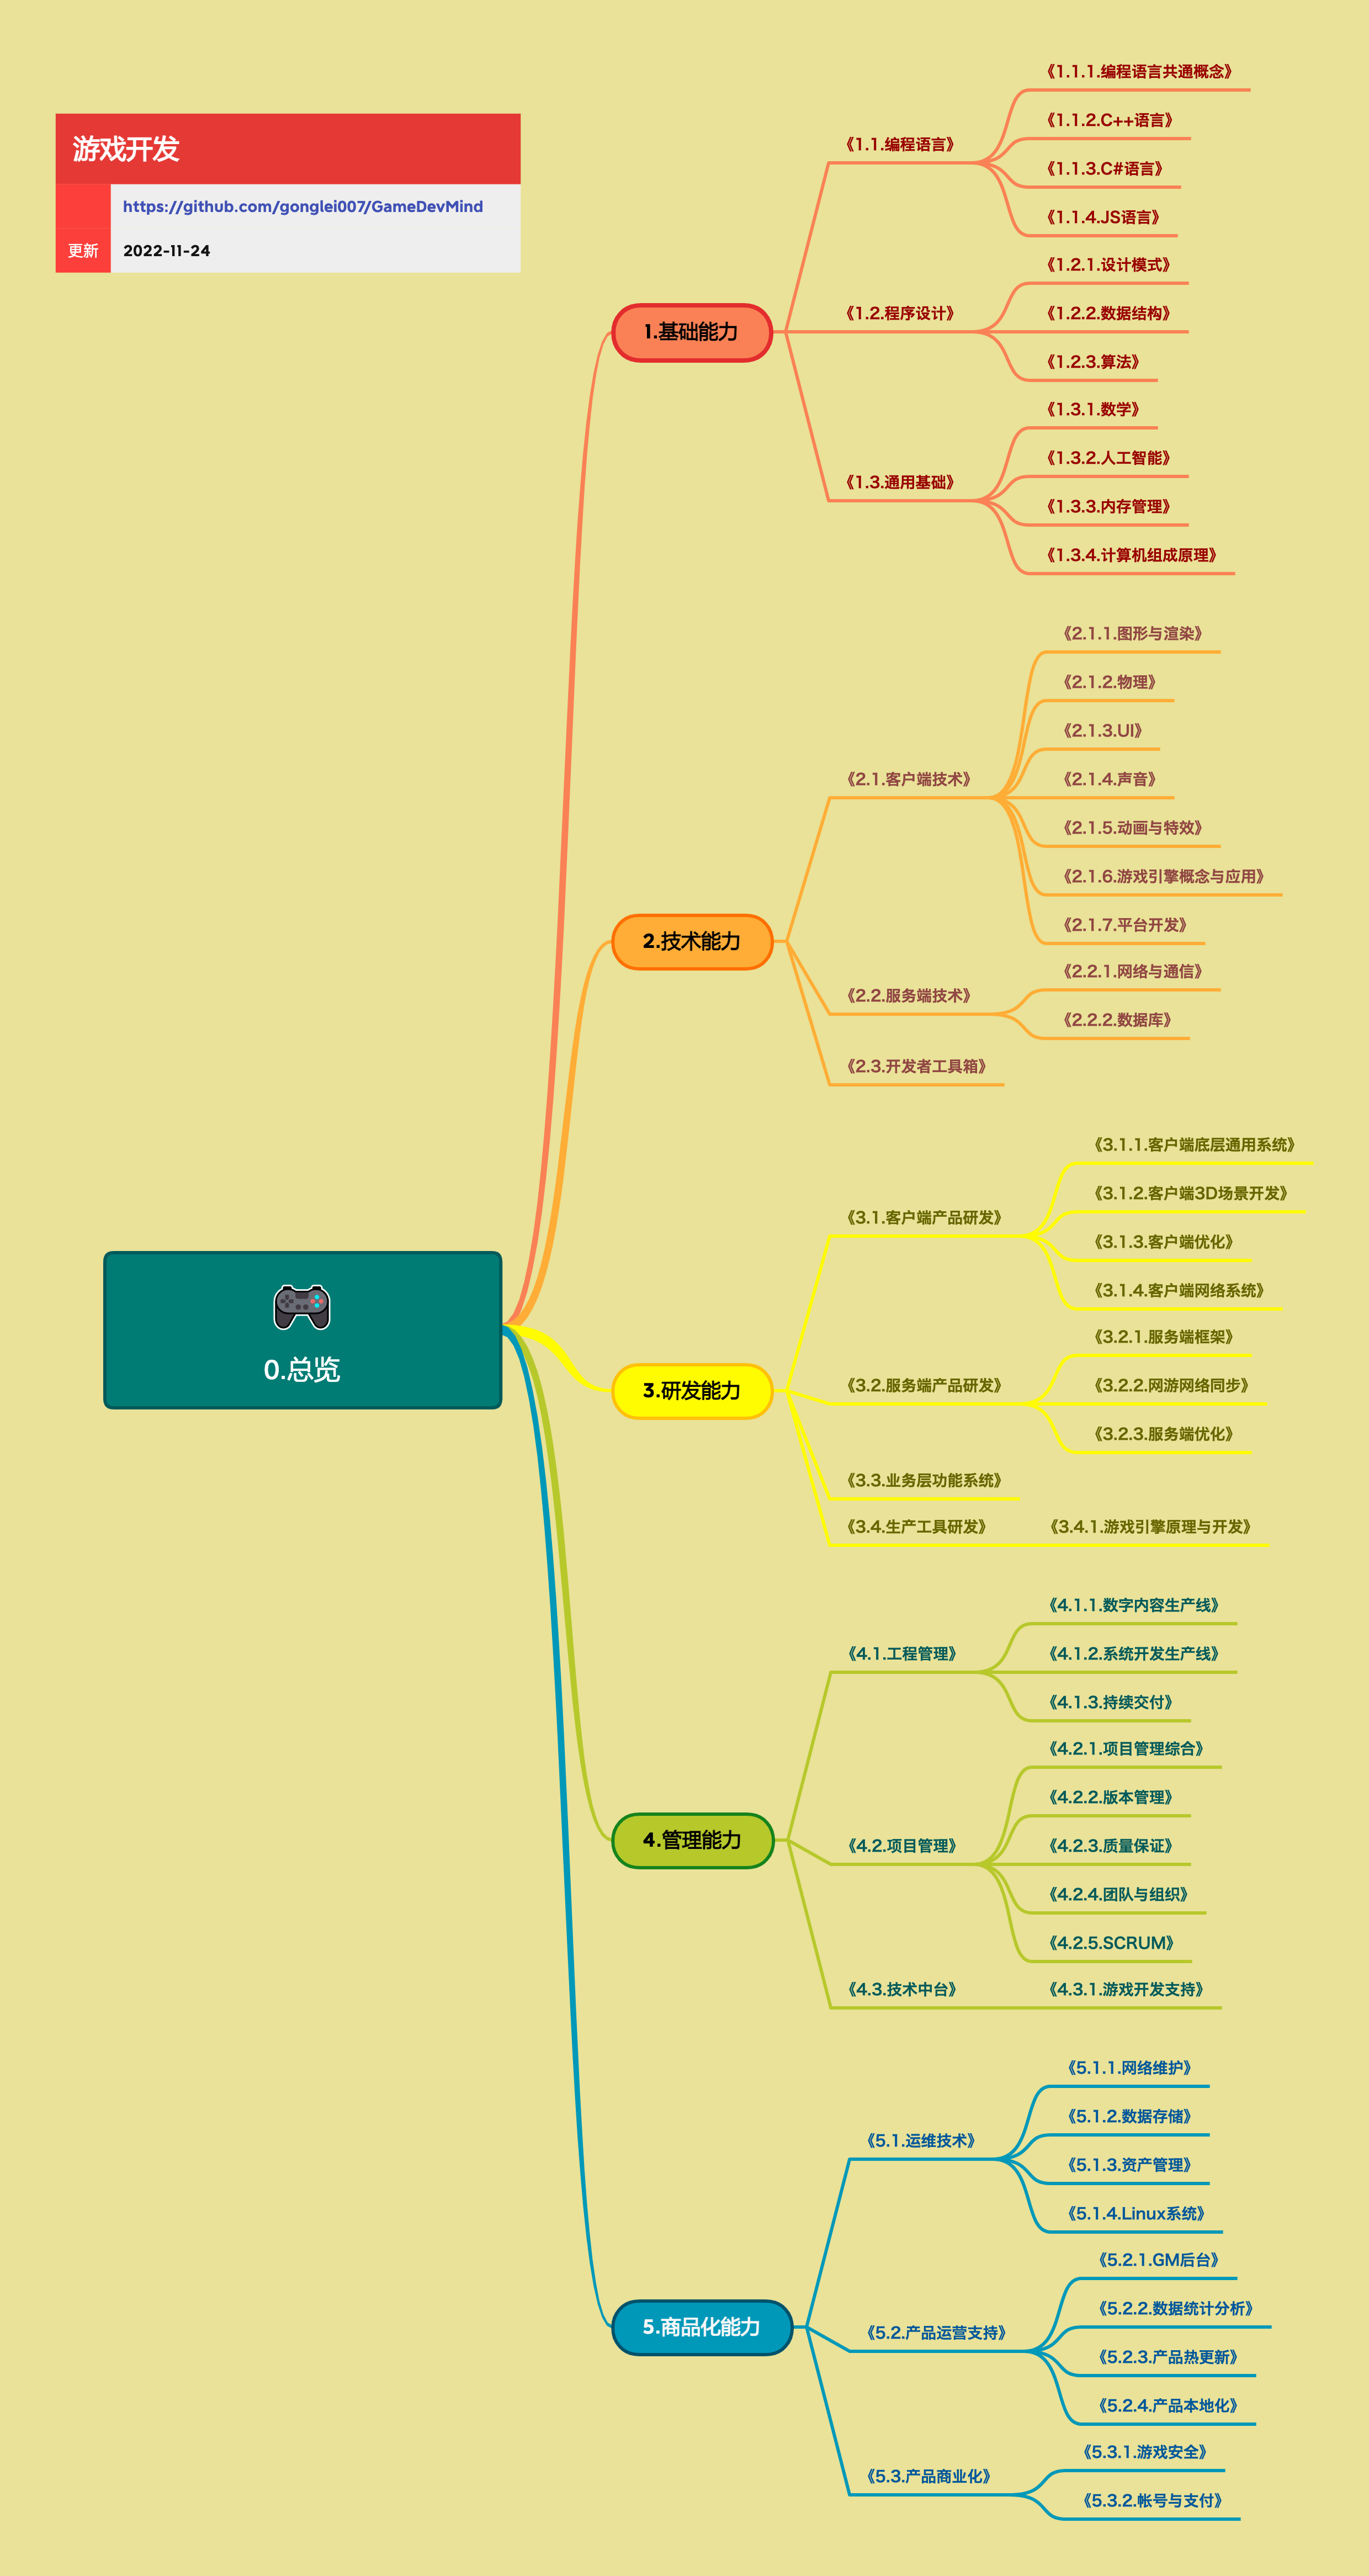 图1、这是知识树的框架，展开的知识树可以点击下面的github链接查看。